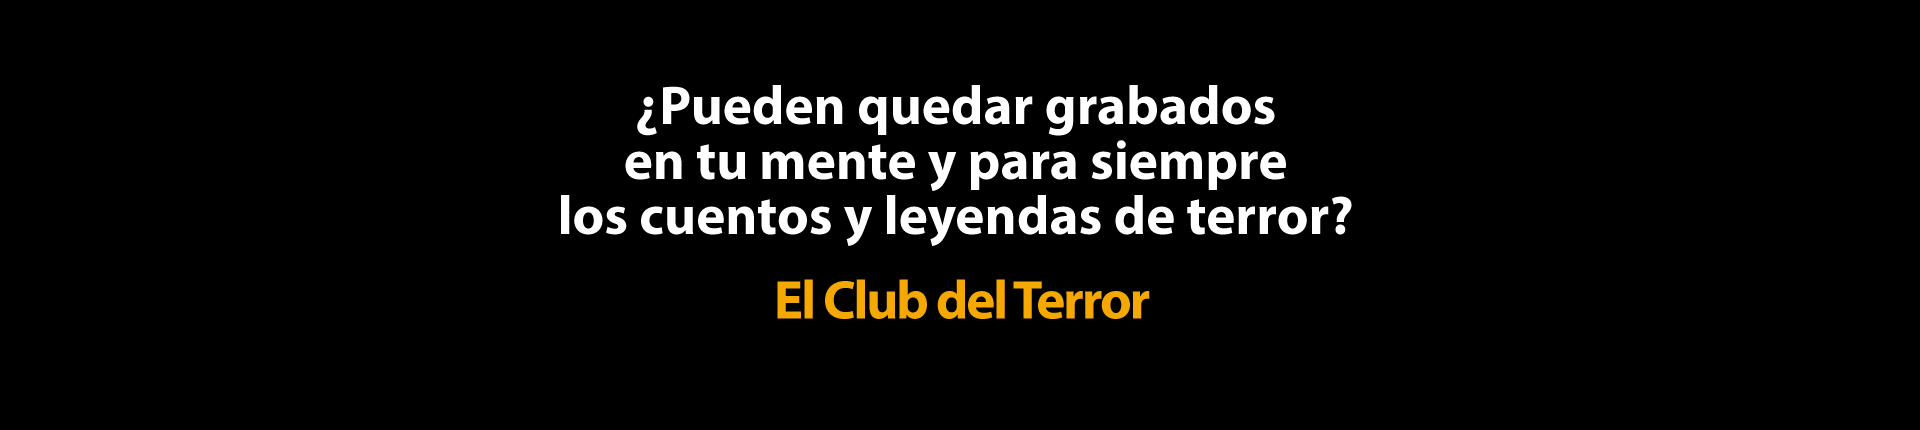 202108-El-club-del-terror-Asomate